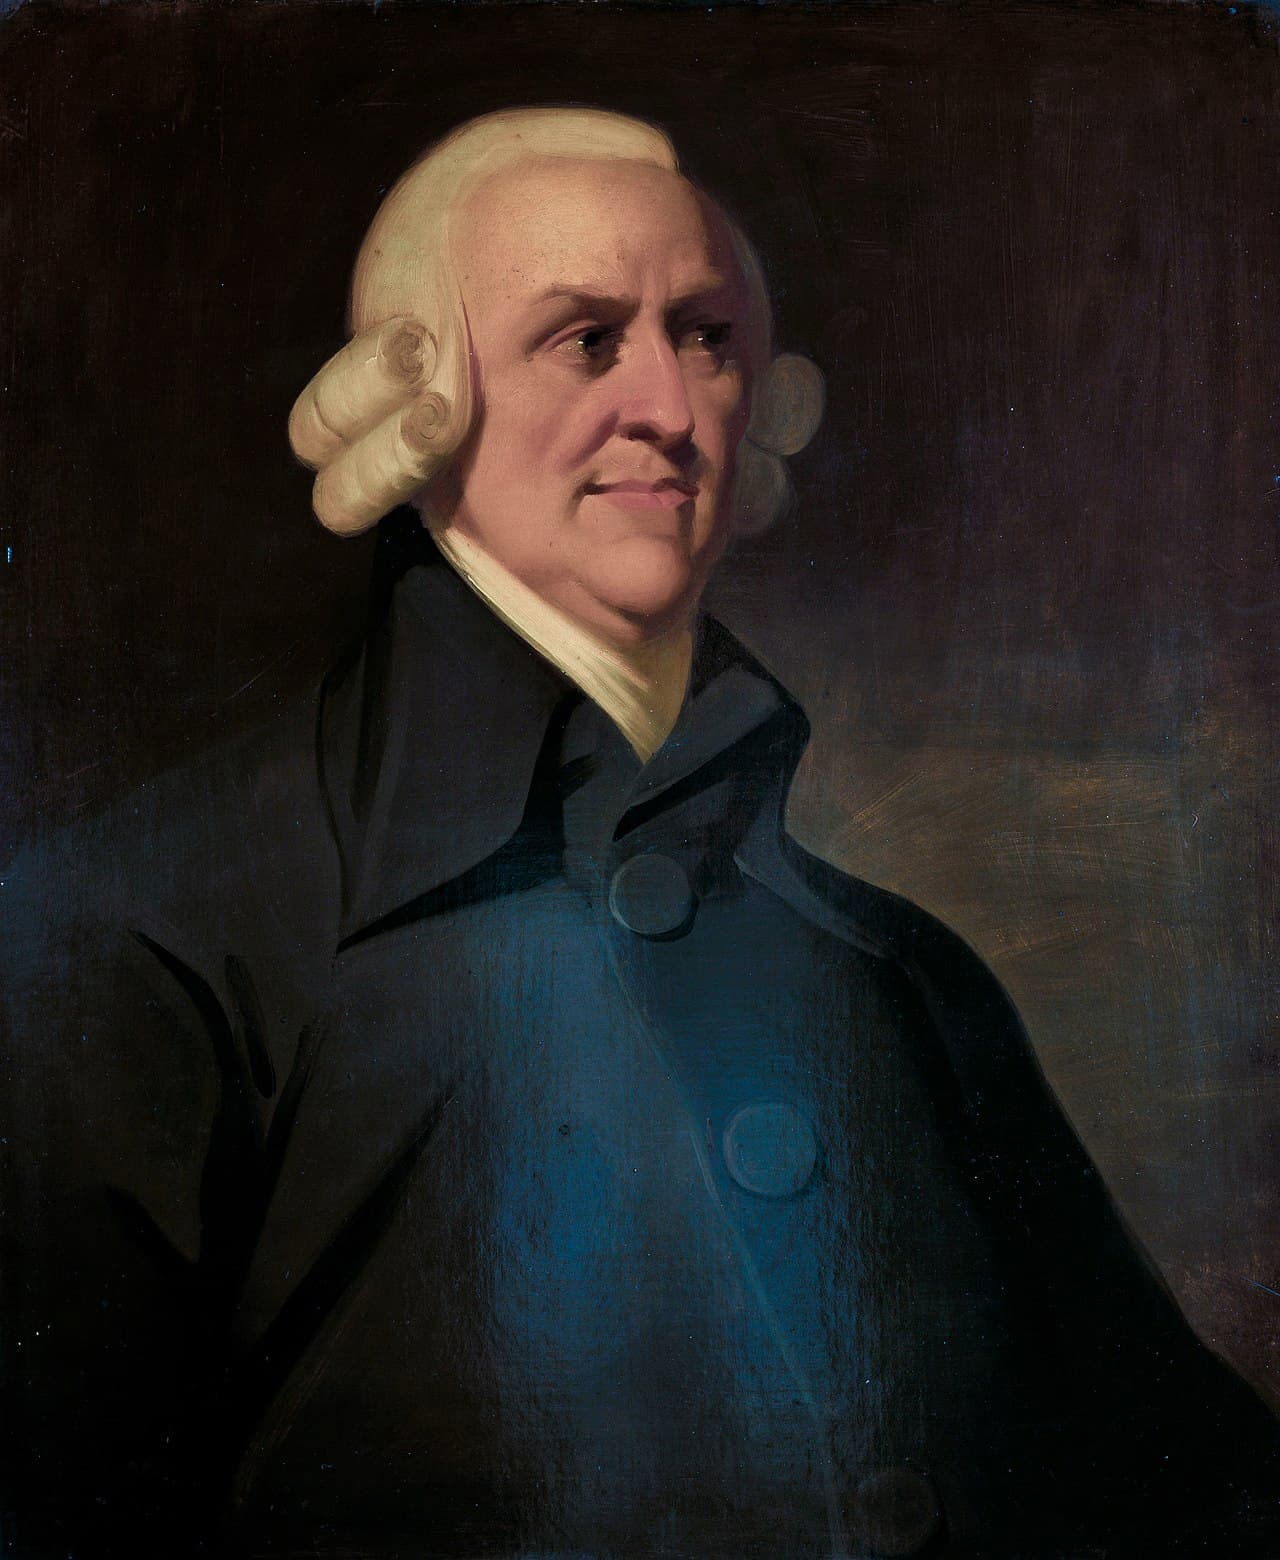 Retrato póstumo de Adam Smith. Fue realizado por un artista desconocido hacia 1800. En el mundo anglosajón se lo conoce con el nombre de Muir portrait.